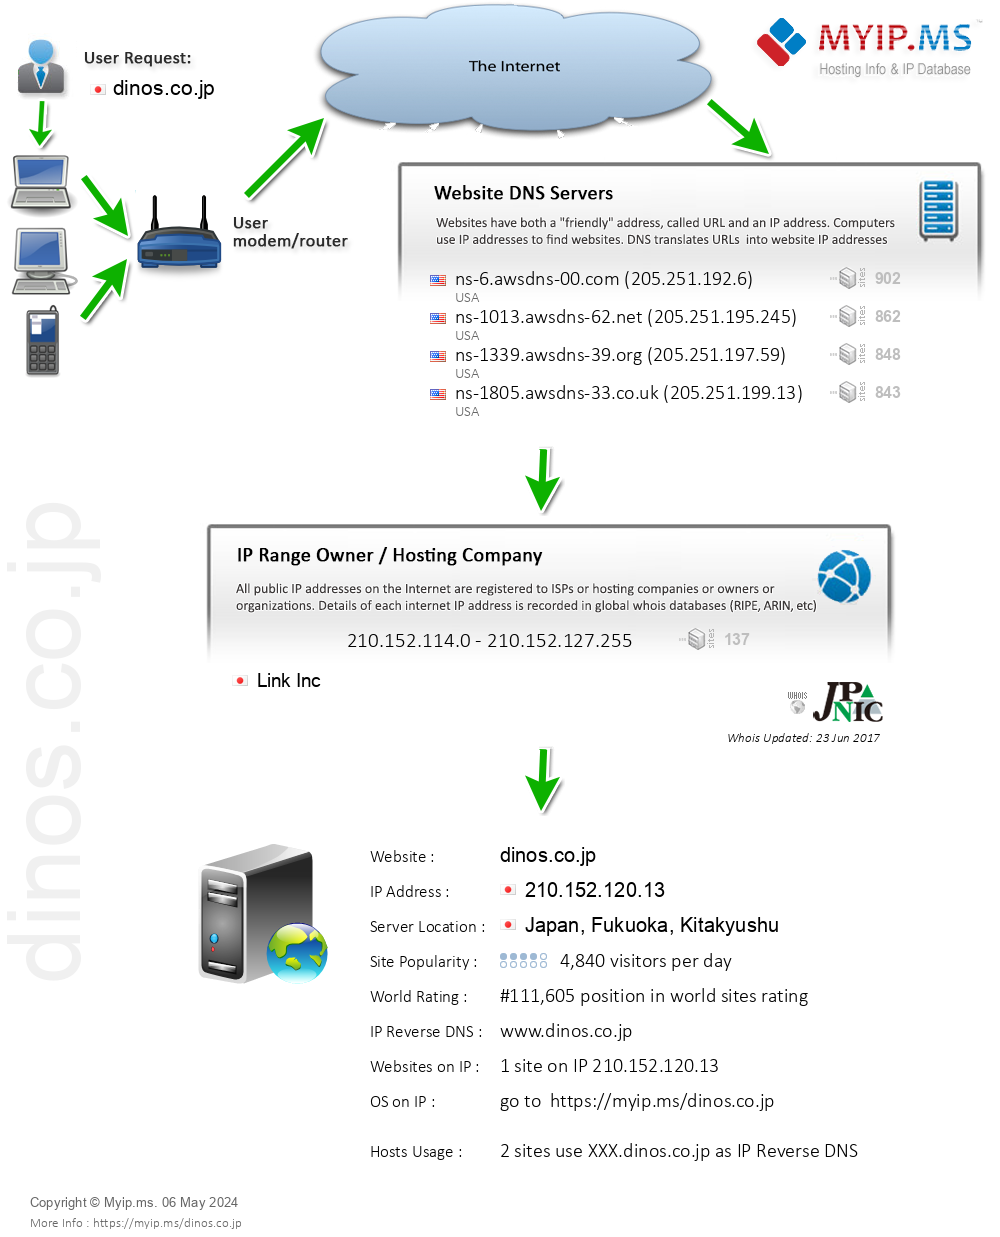 Dinos.co.jp - Website Hosting Visual IP Diagram